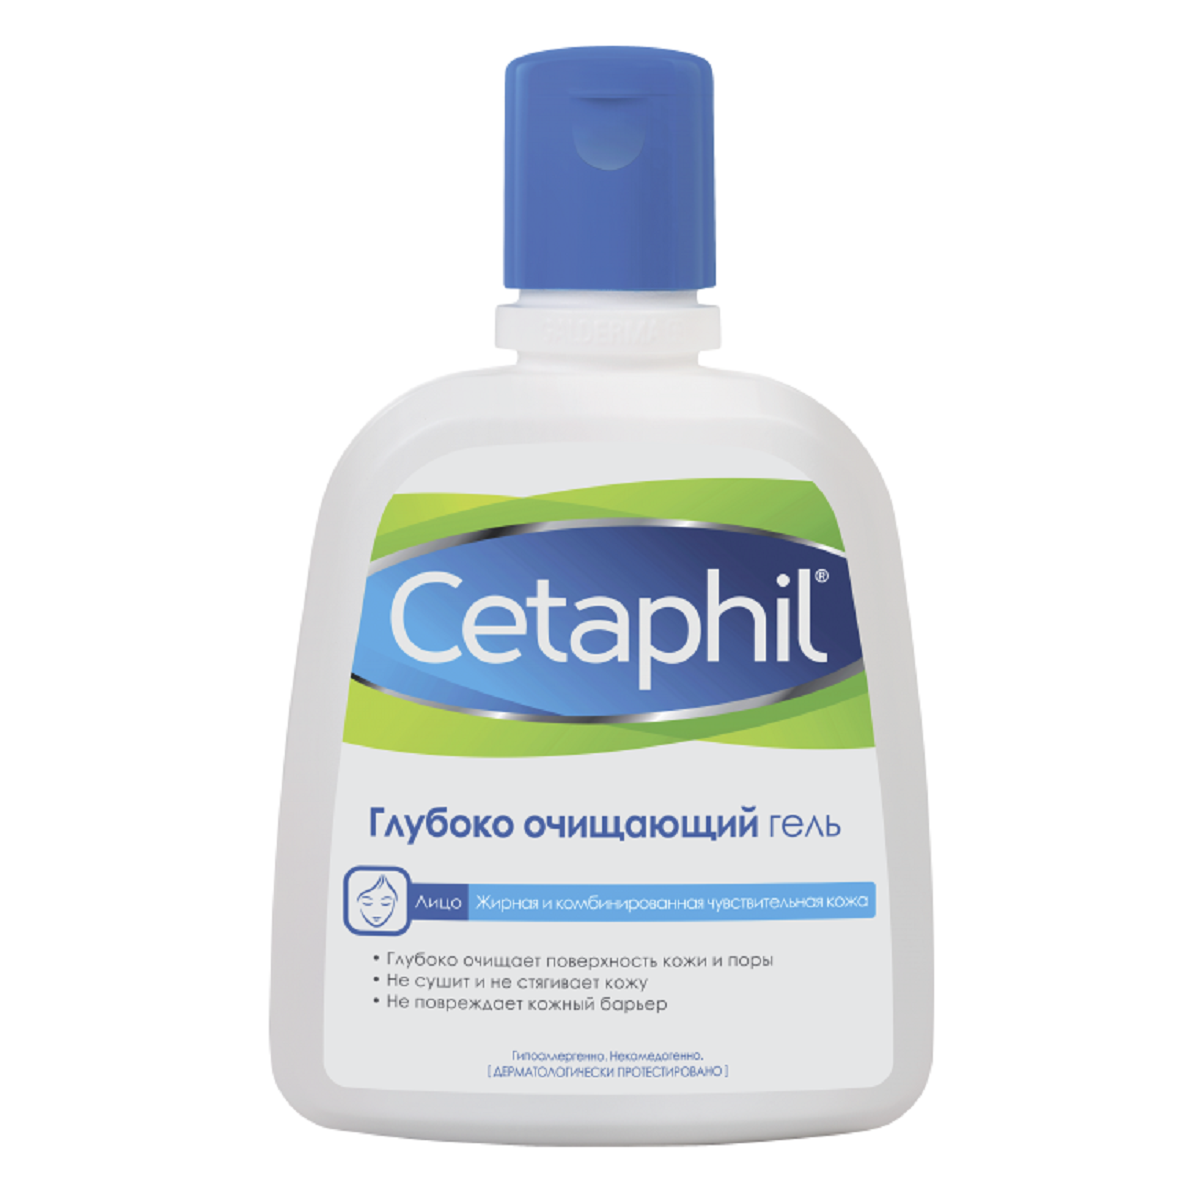 Cetaphil Сетафил глубоко очищающий гель 235мл (Cetaphil, Баз